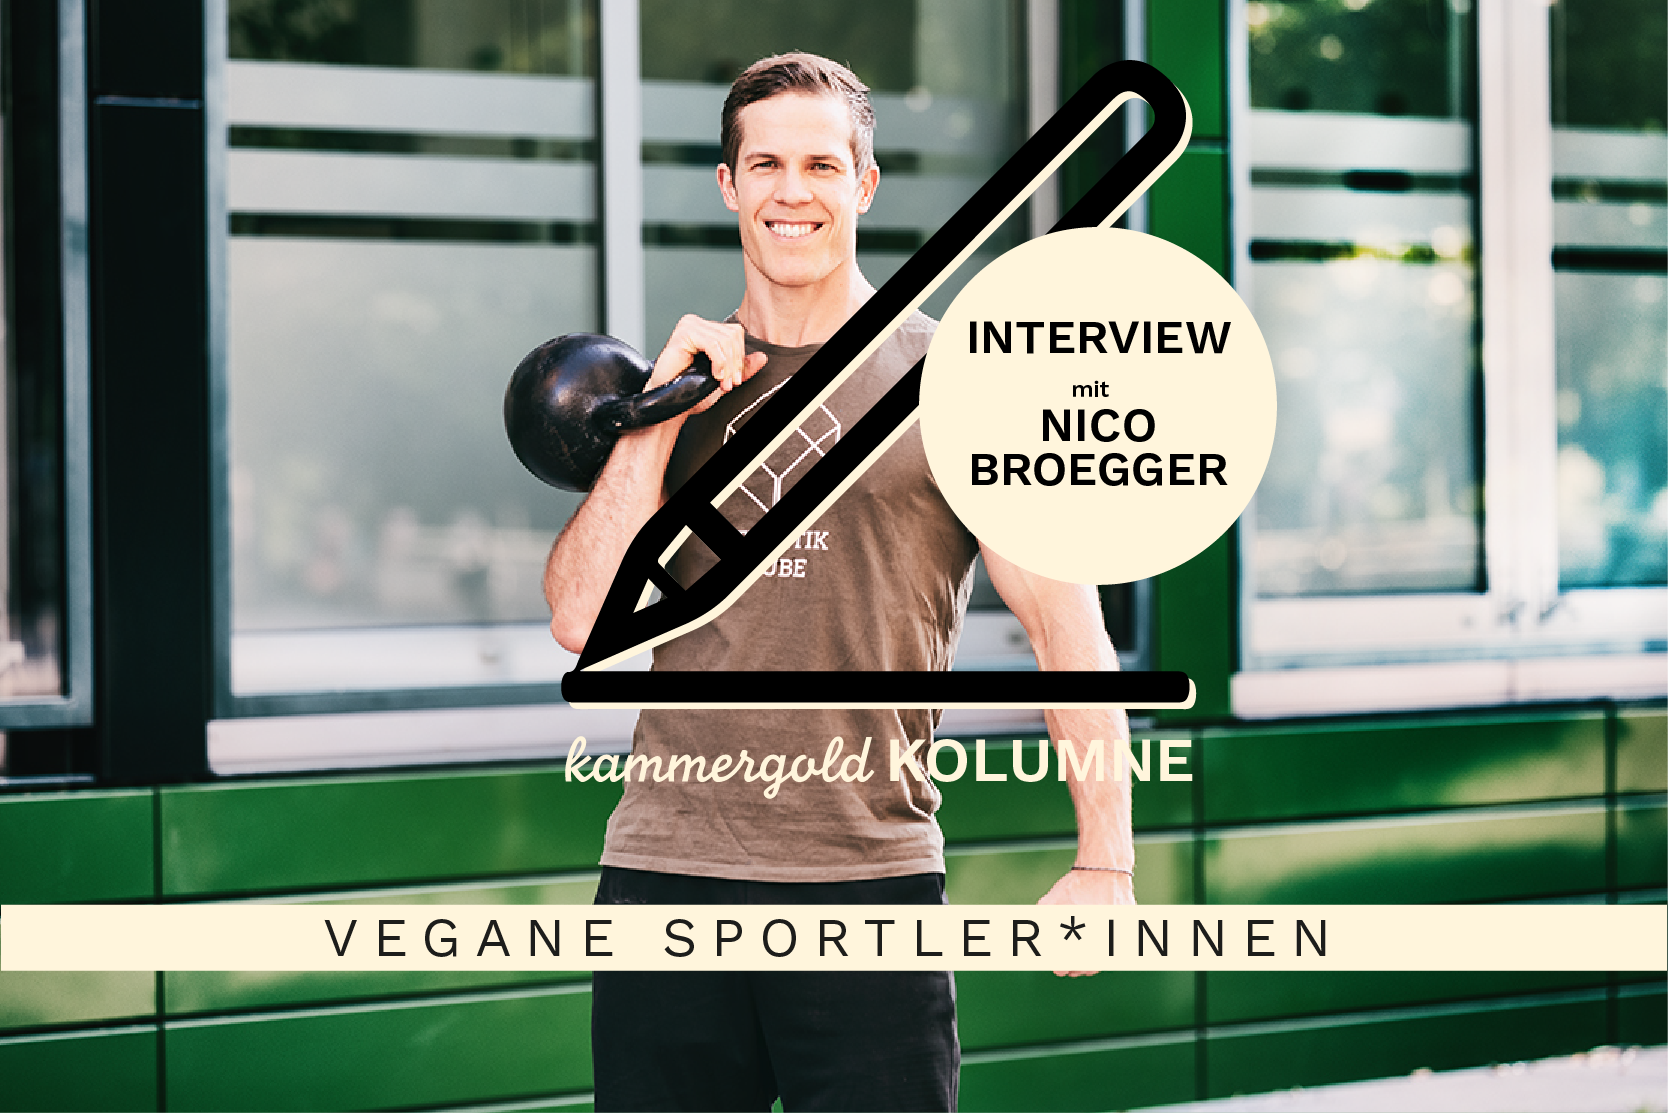 Vegane Sportler - Diese Sportler sind vegan [Interview]